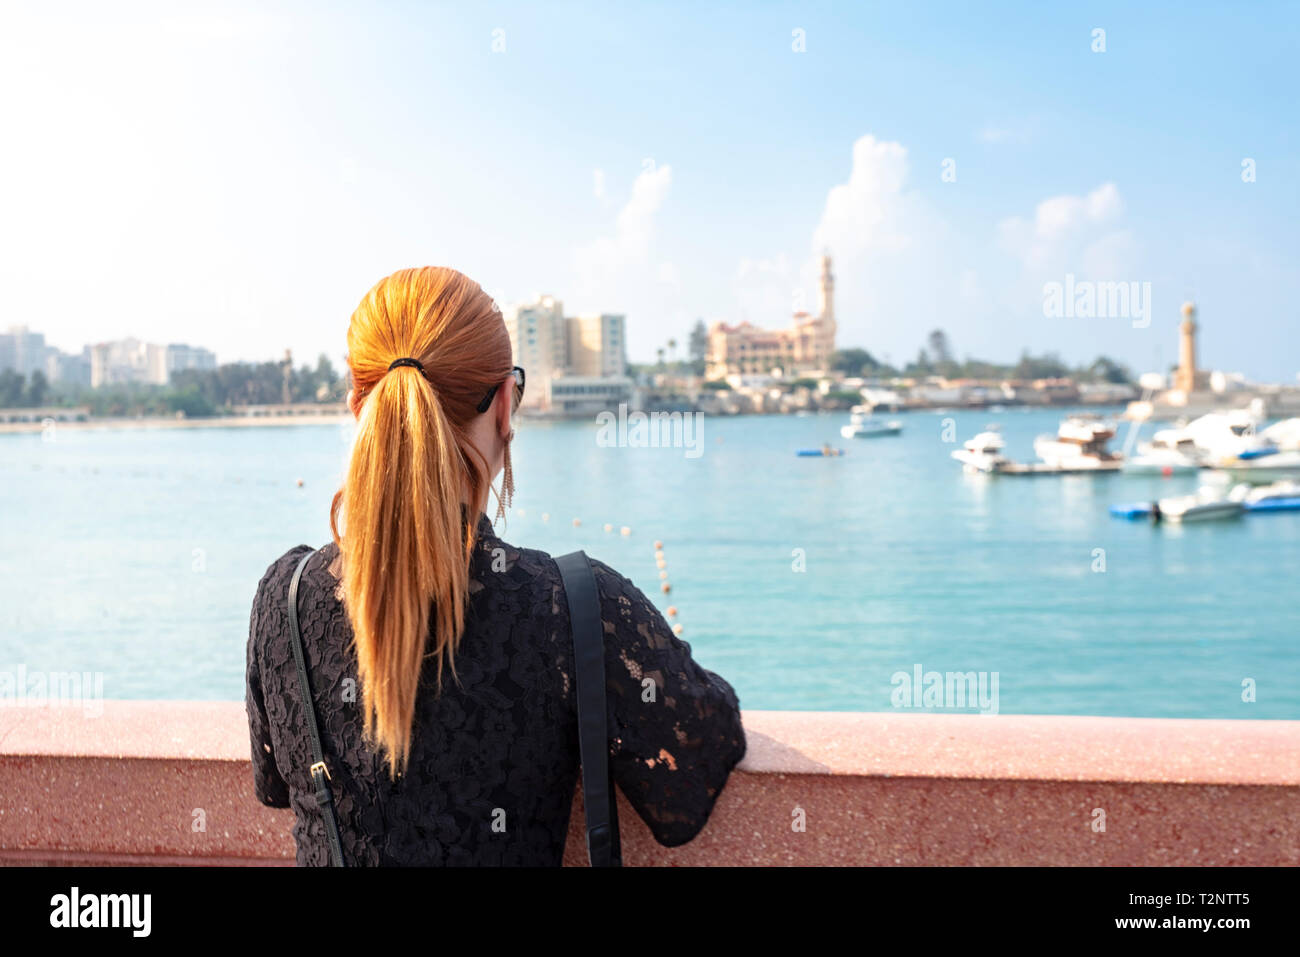 Woman with red hair avec vue sur mer en direction de Montaza palace, vue arrière, Alexandria, Egypte Banque D'Images